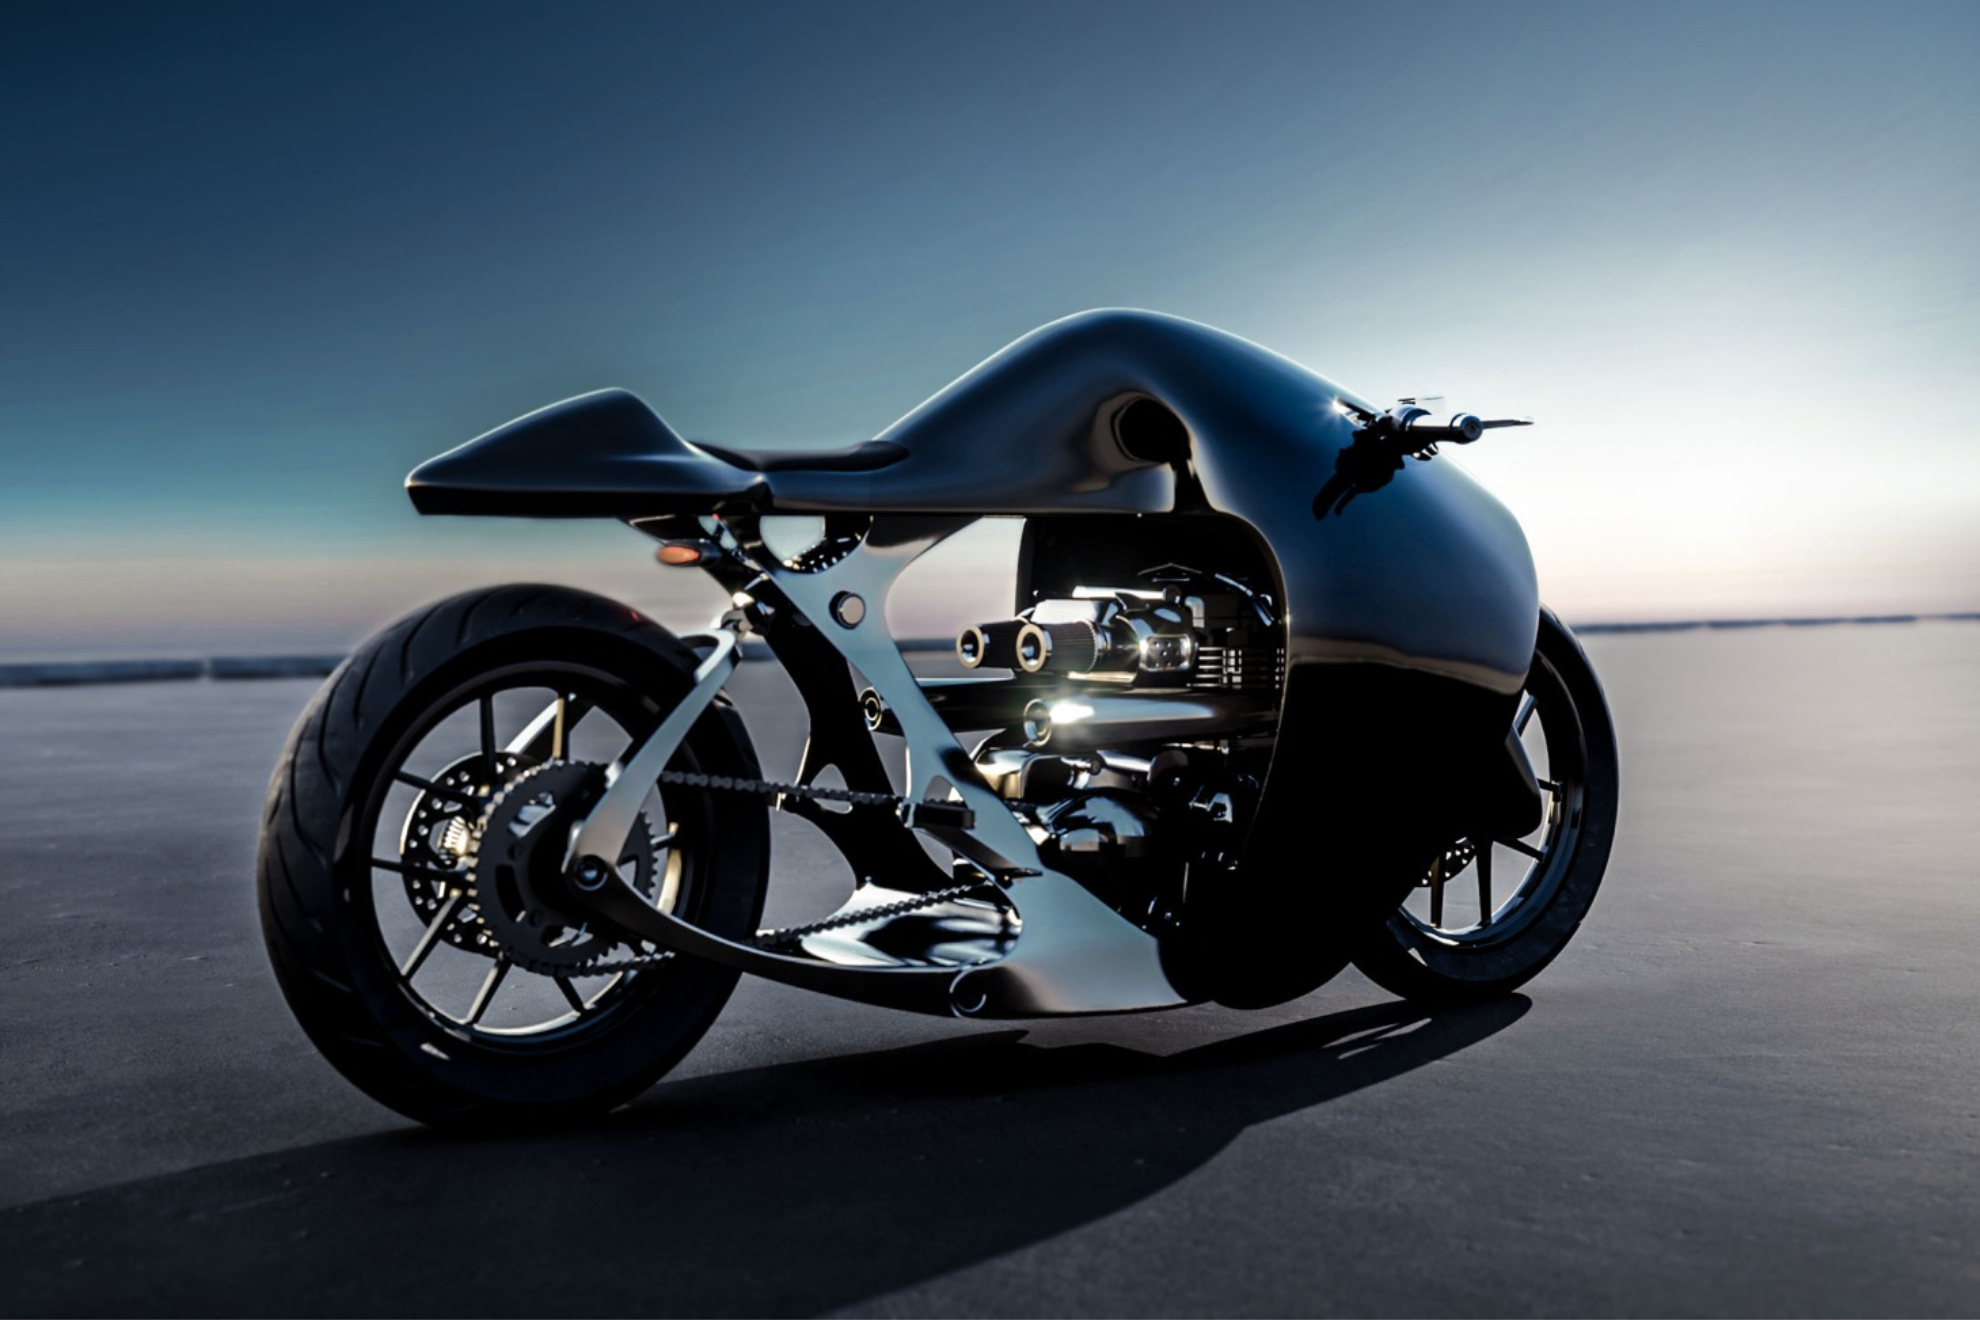 La moto está inspirada en la forma y los movimientos de las rayas Mobulas.